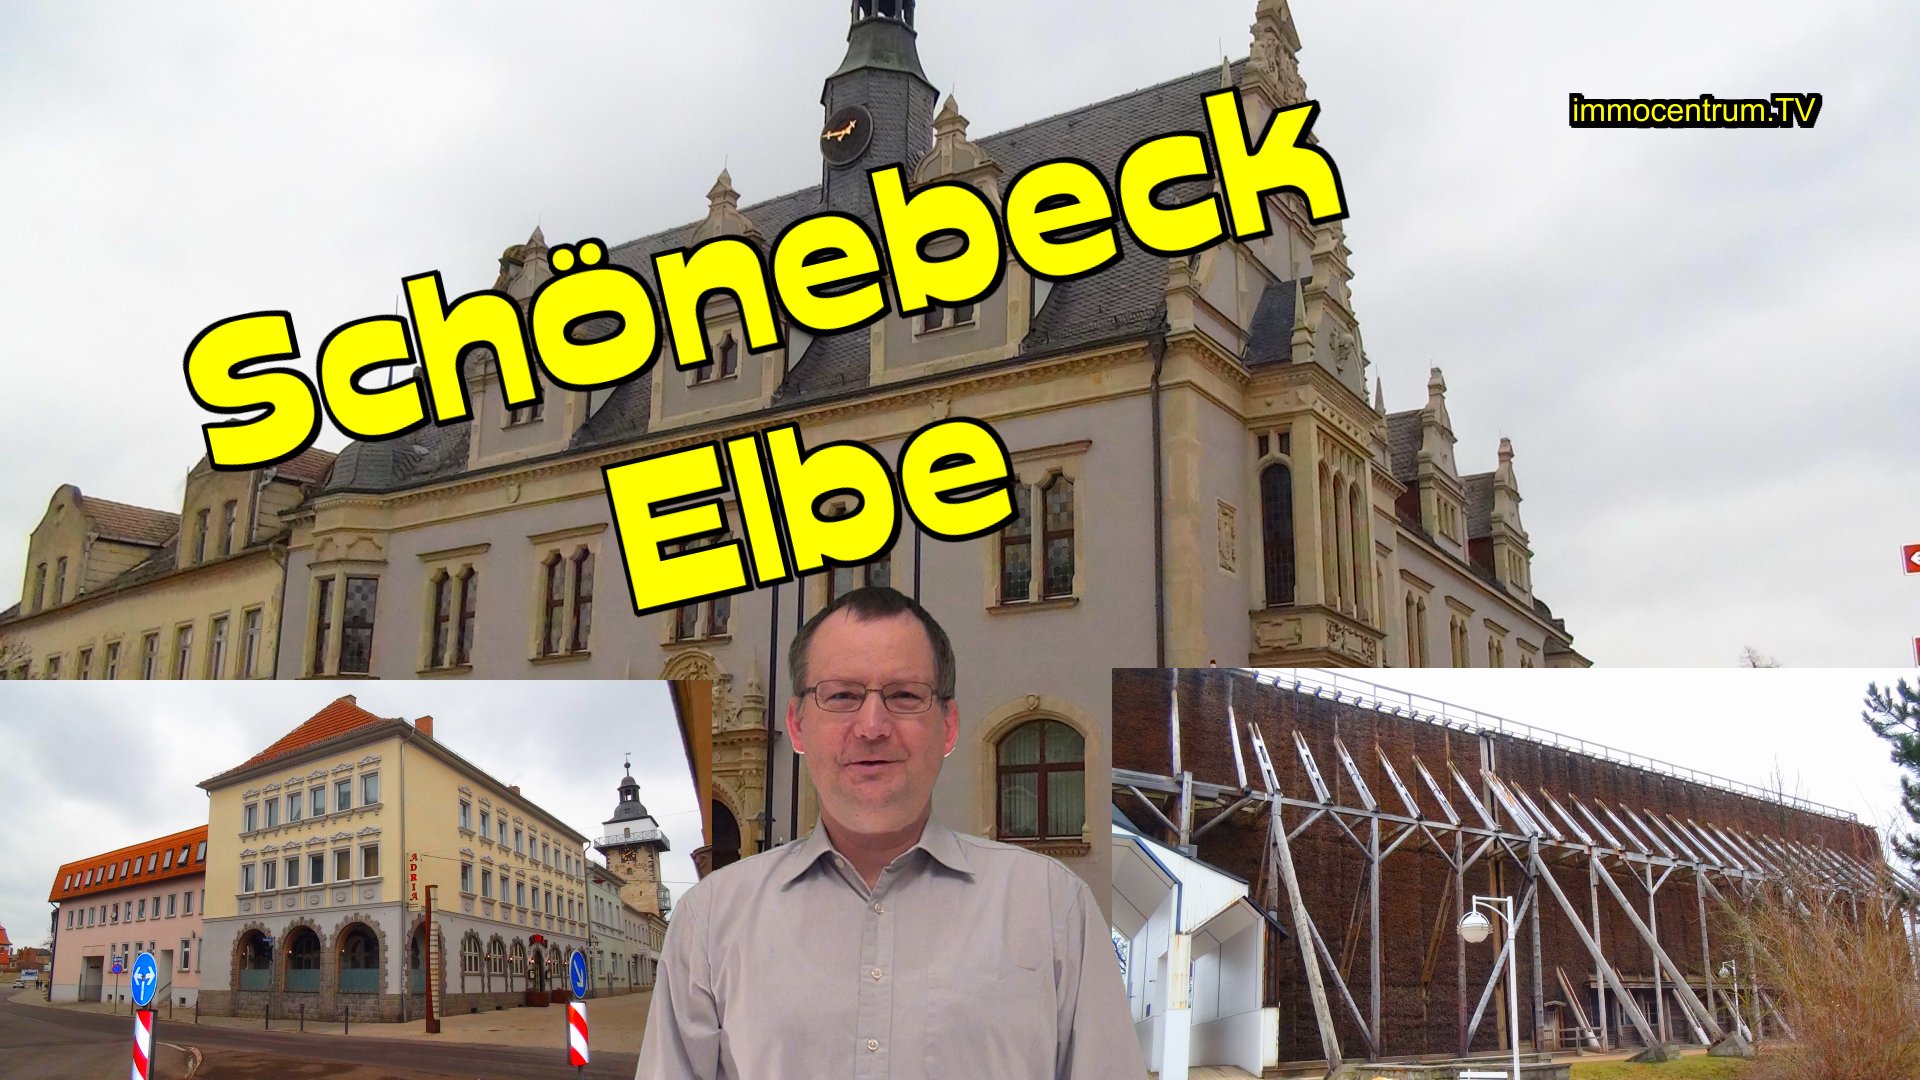 Schoenebeck Elbe TN